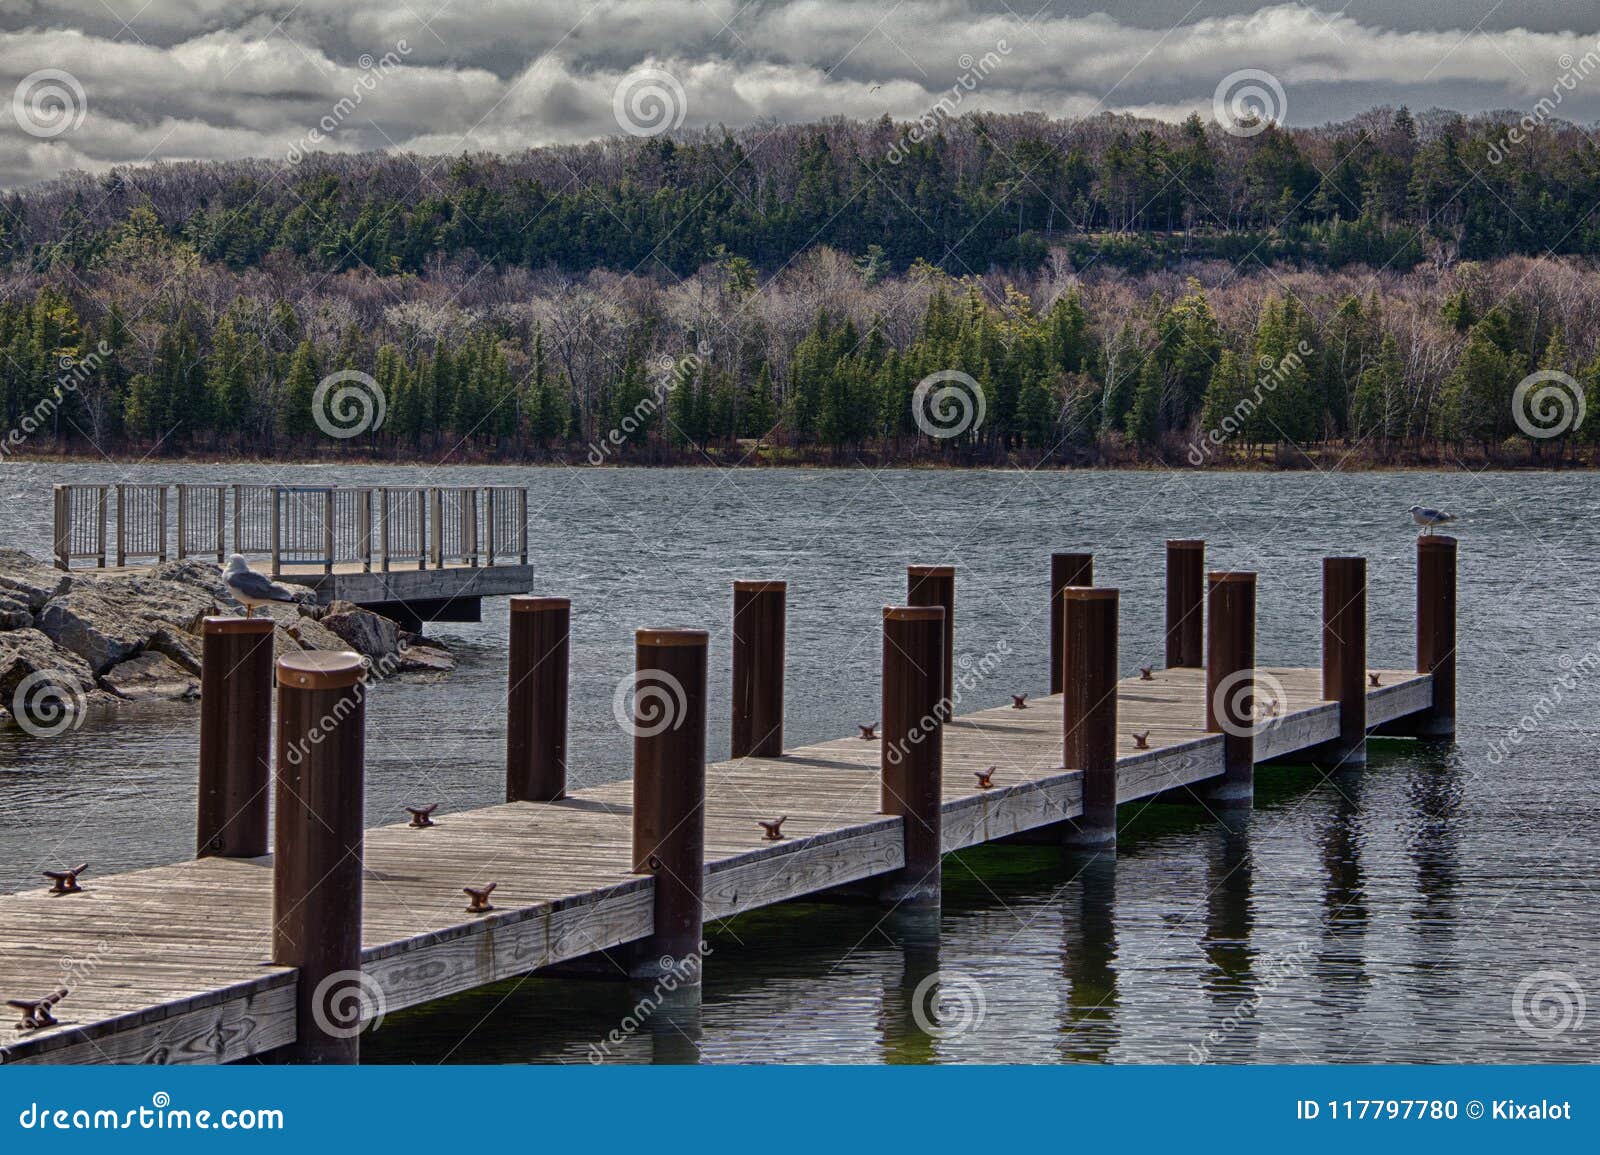 wooden piers along door county, wi shoreline